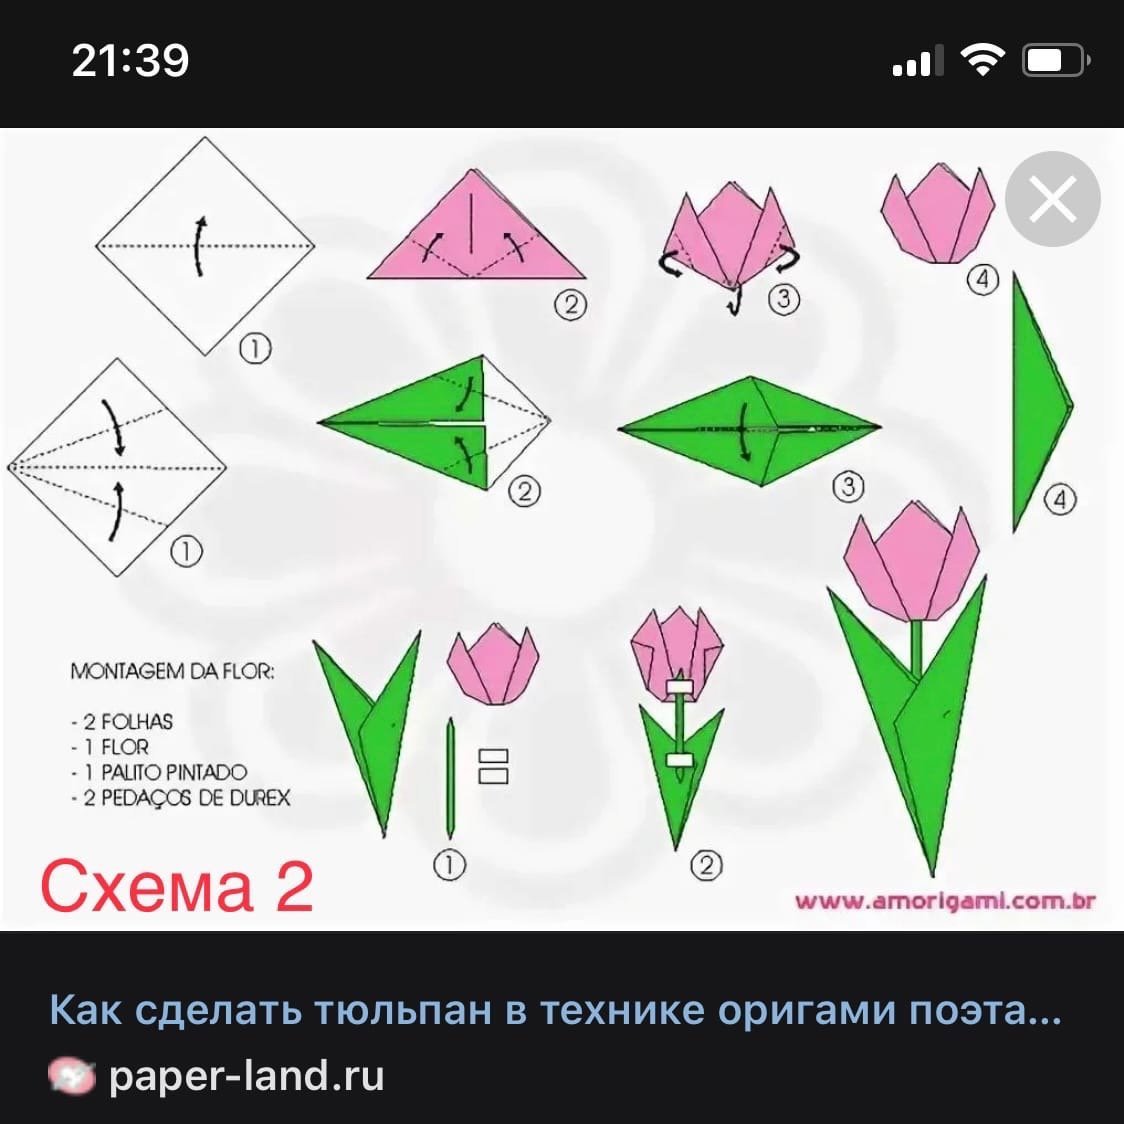 Крокус оригами для детей. Оригами тюльпан пошагово для начинающих. Схема оригами тюльпана для начинающих. Оригами тюльпан схема для детей простая. Оригами тюльпан схема для начинающих пошагово.